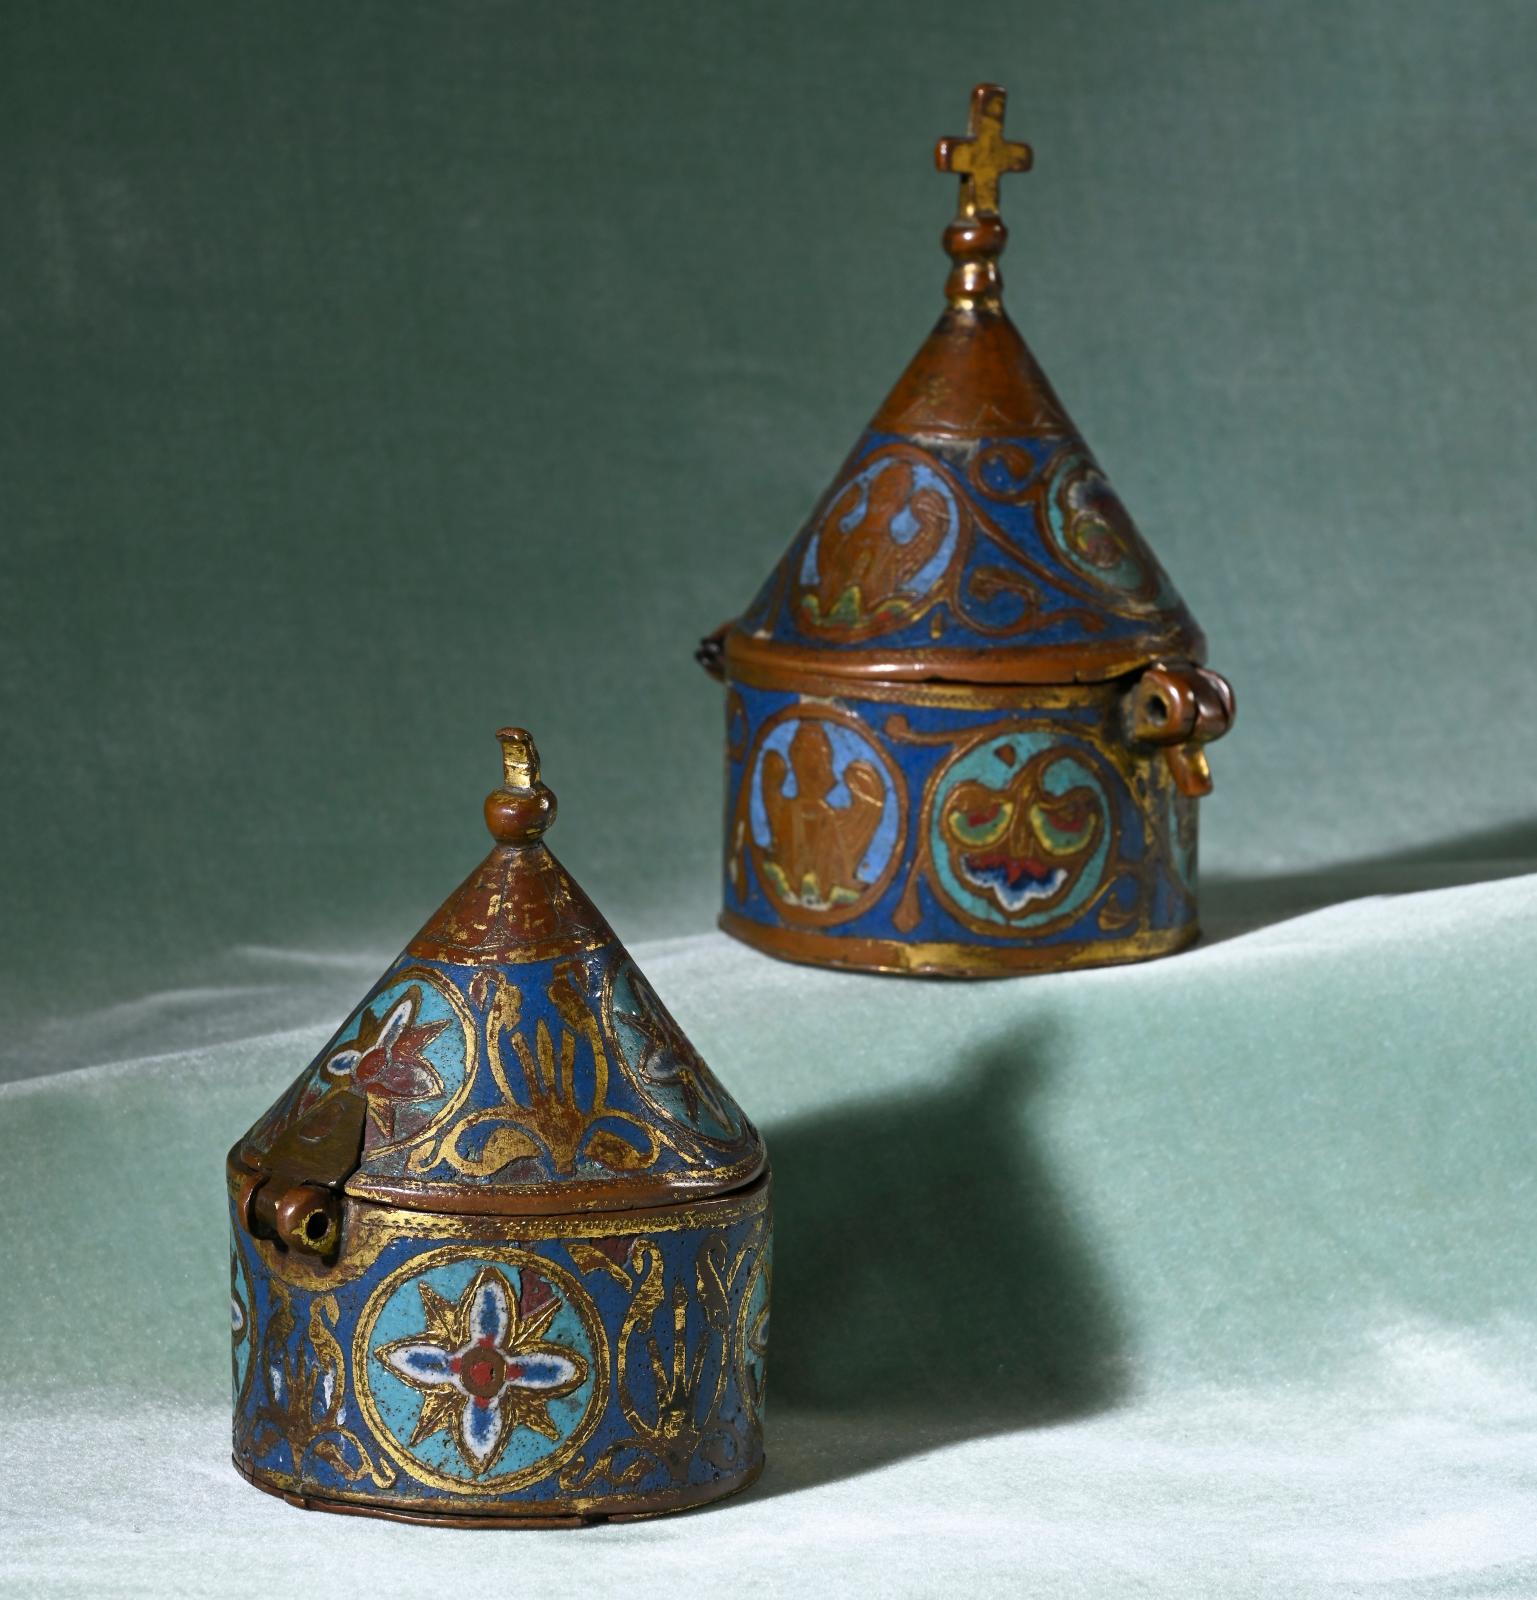 Limoges, milieu du XIIIe siècle. Pyxide en cuivre embouti, champlevé, émaillé, gravé et doré, émaux bleu moyen, turquoise, rouge et blanc 